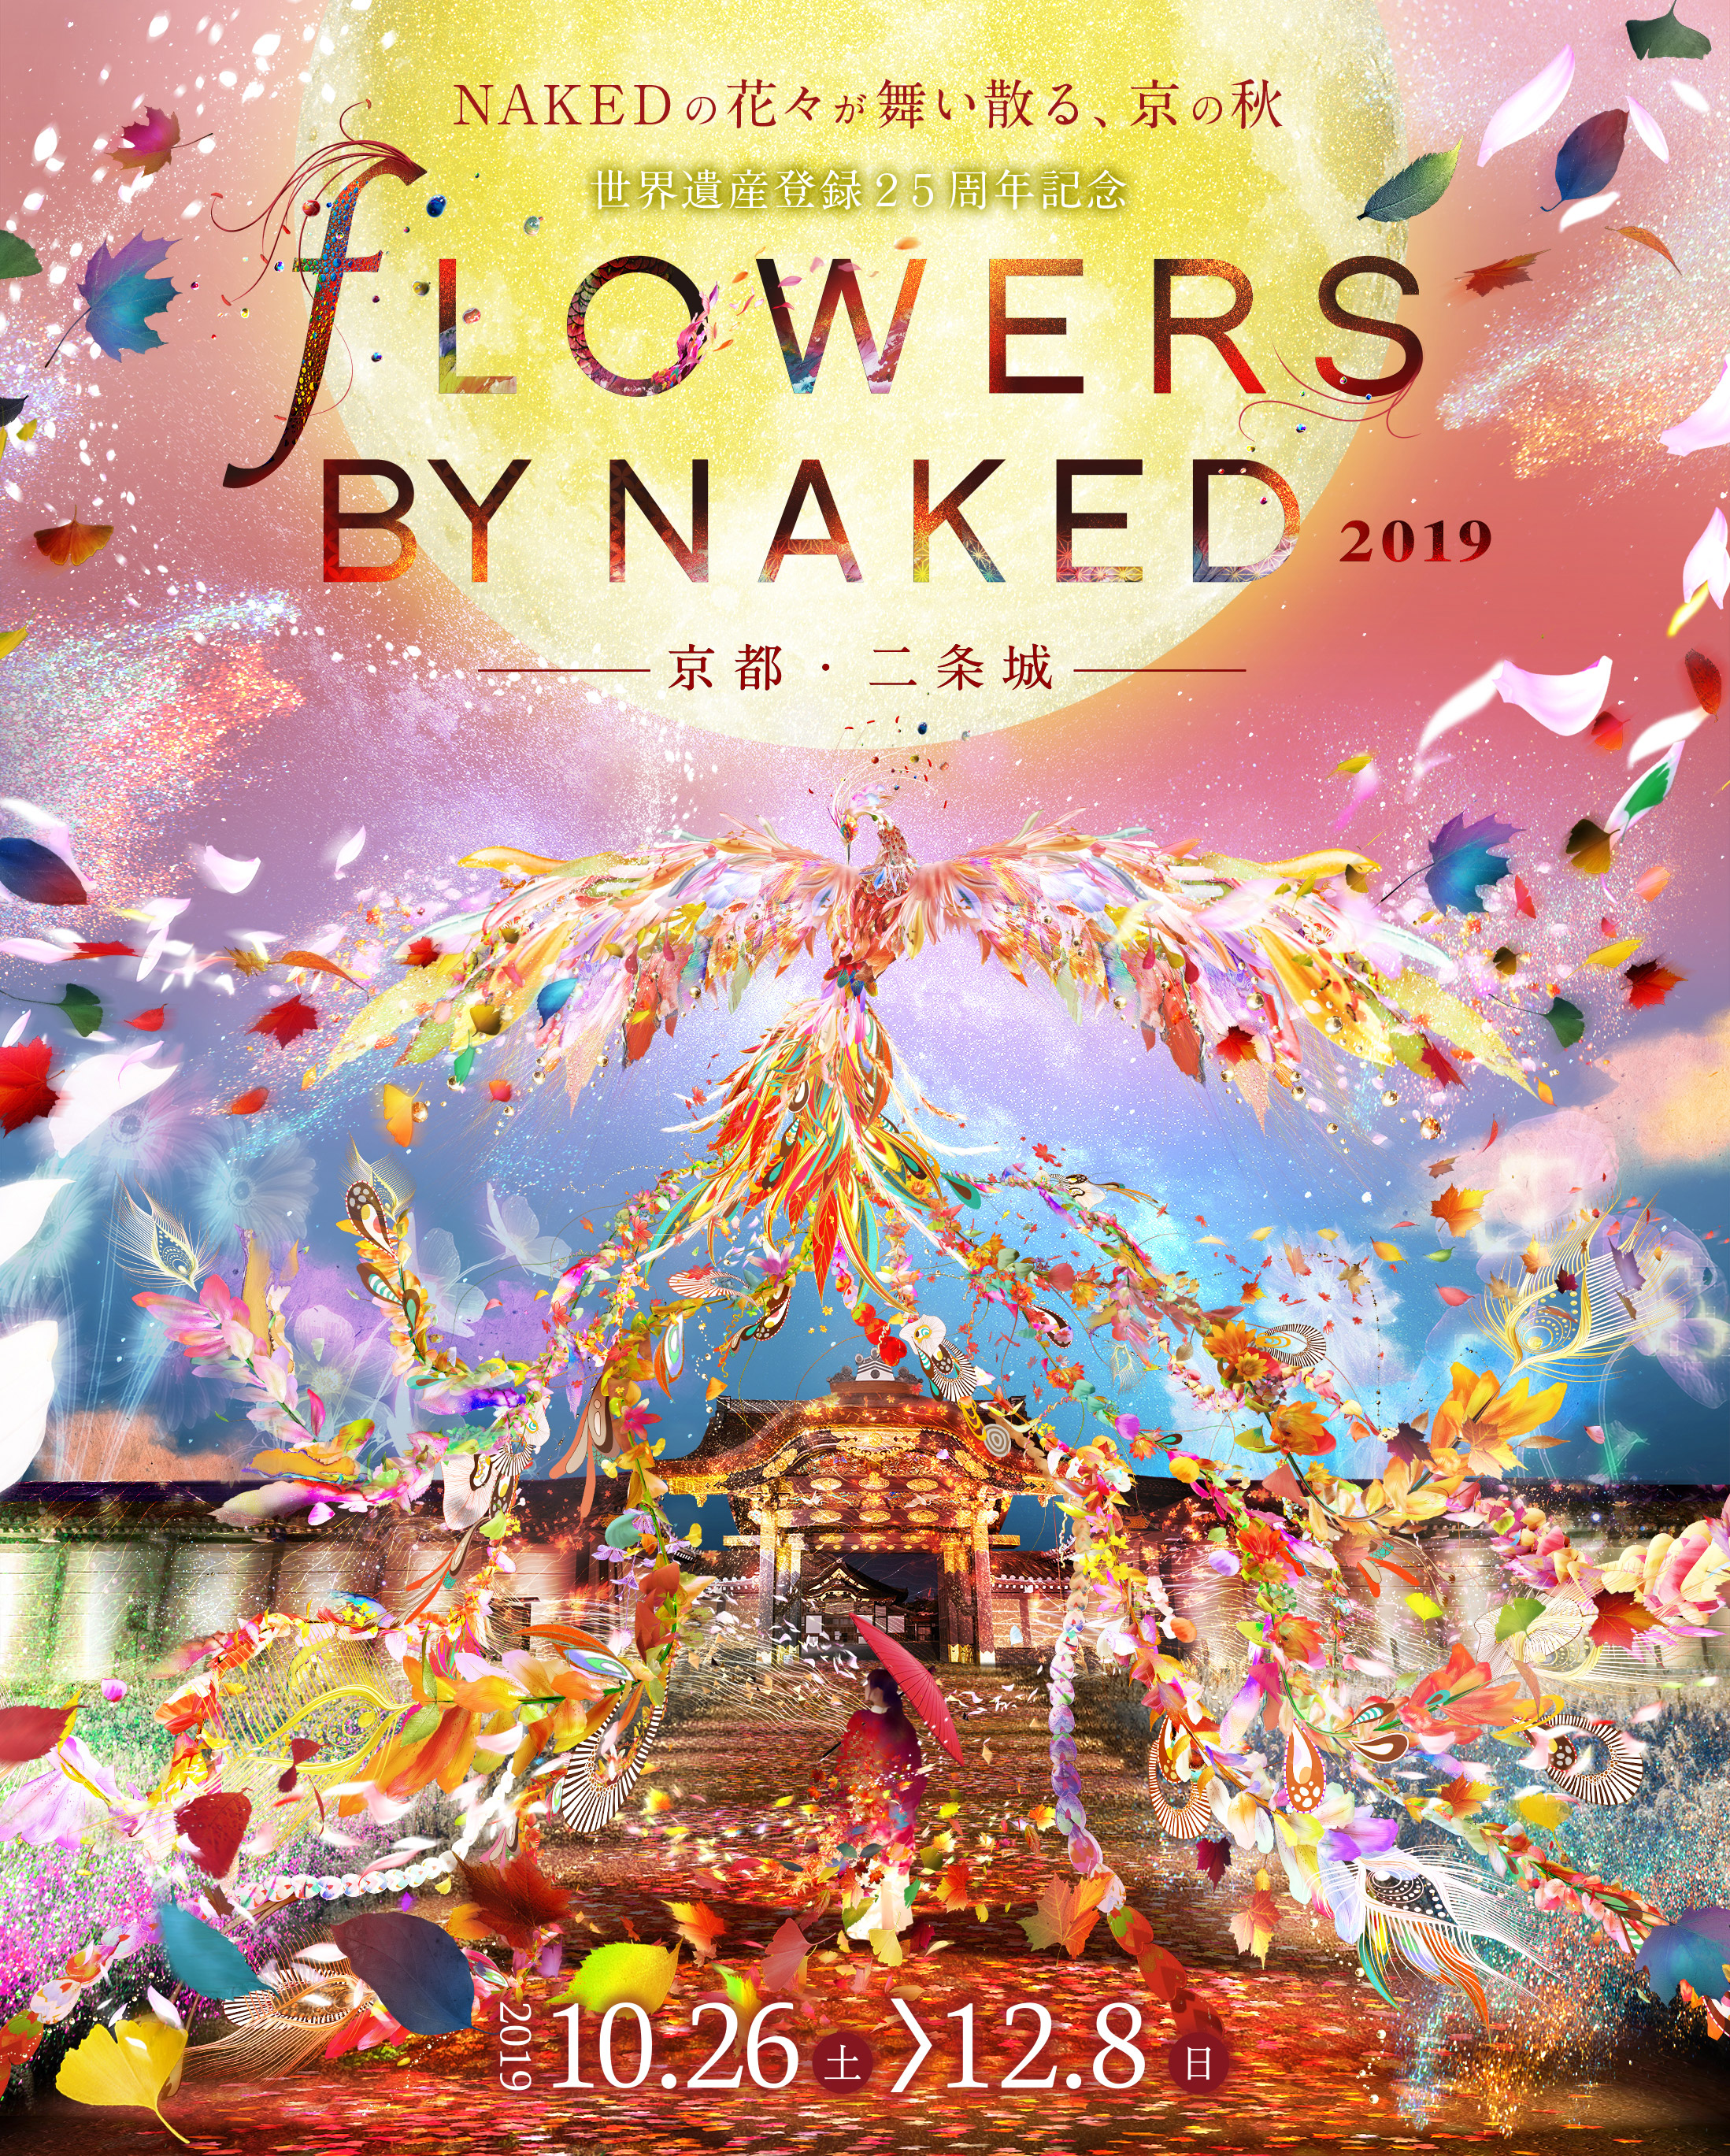 世界遺産登録25周年記念 FLOWERS BY NAKED 2019 ー京都・⼆条城ー